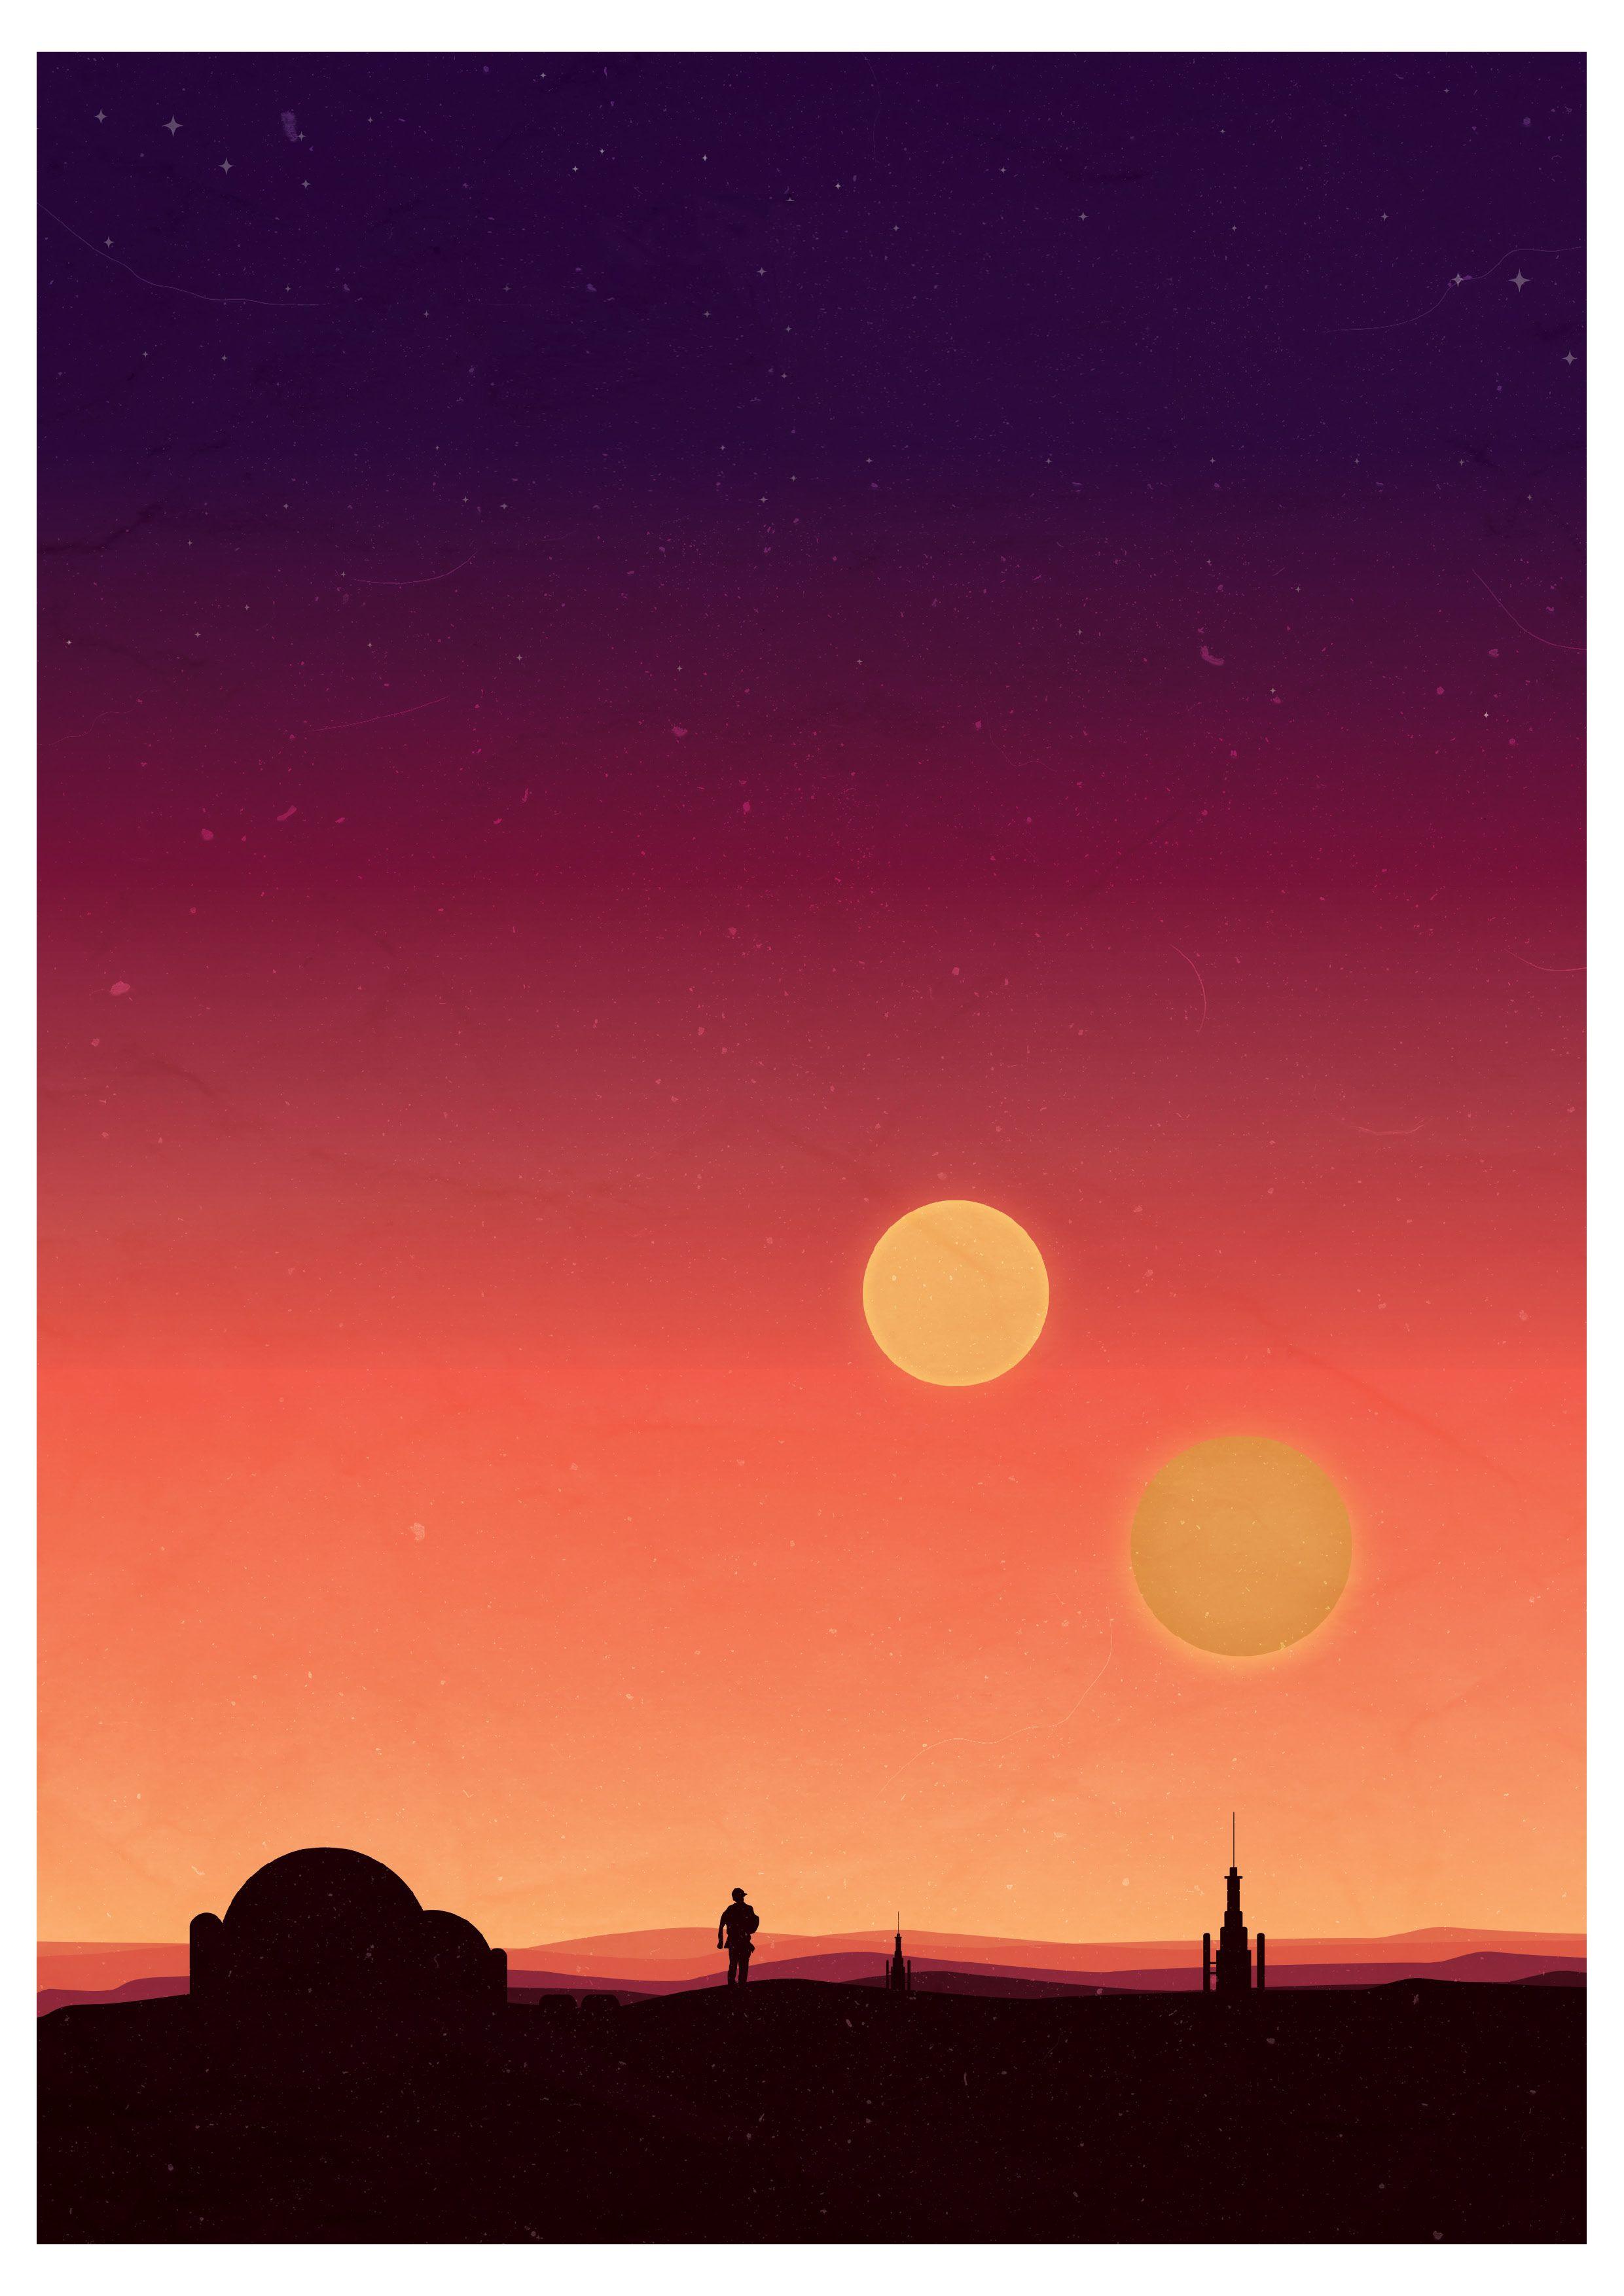 Minimalist Tatooine Wallpapers - Top Free Minimalist ...